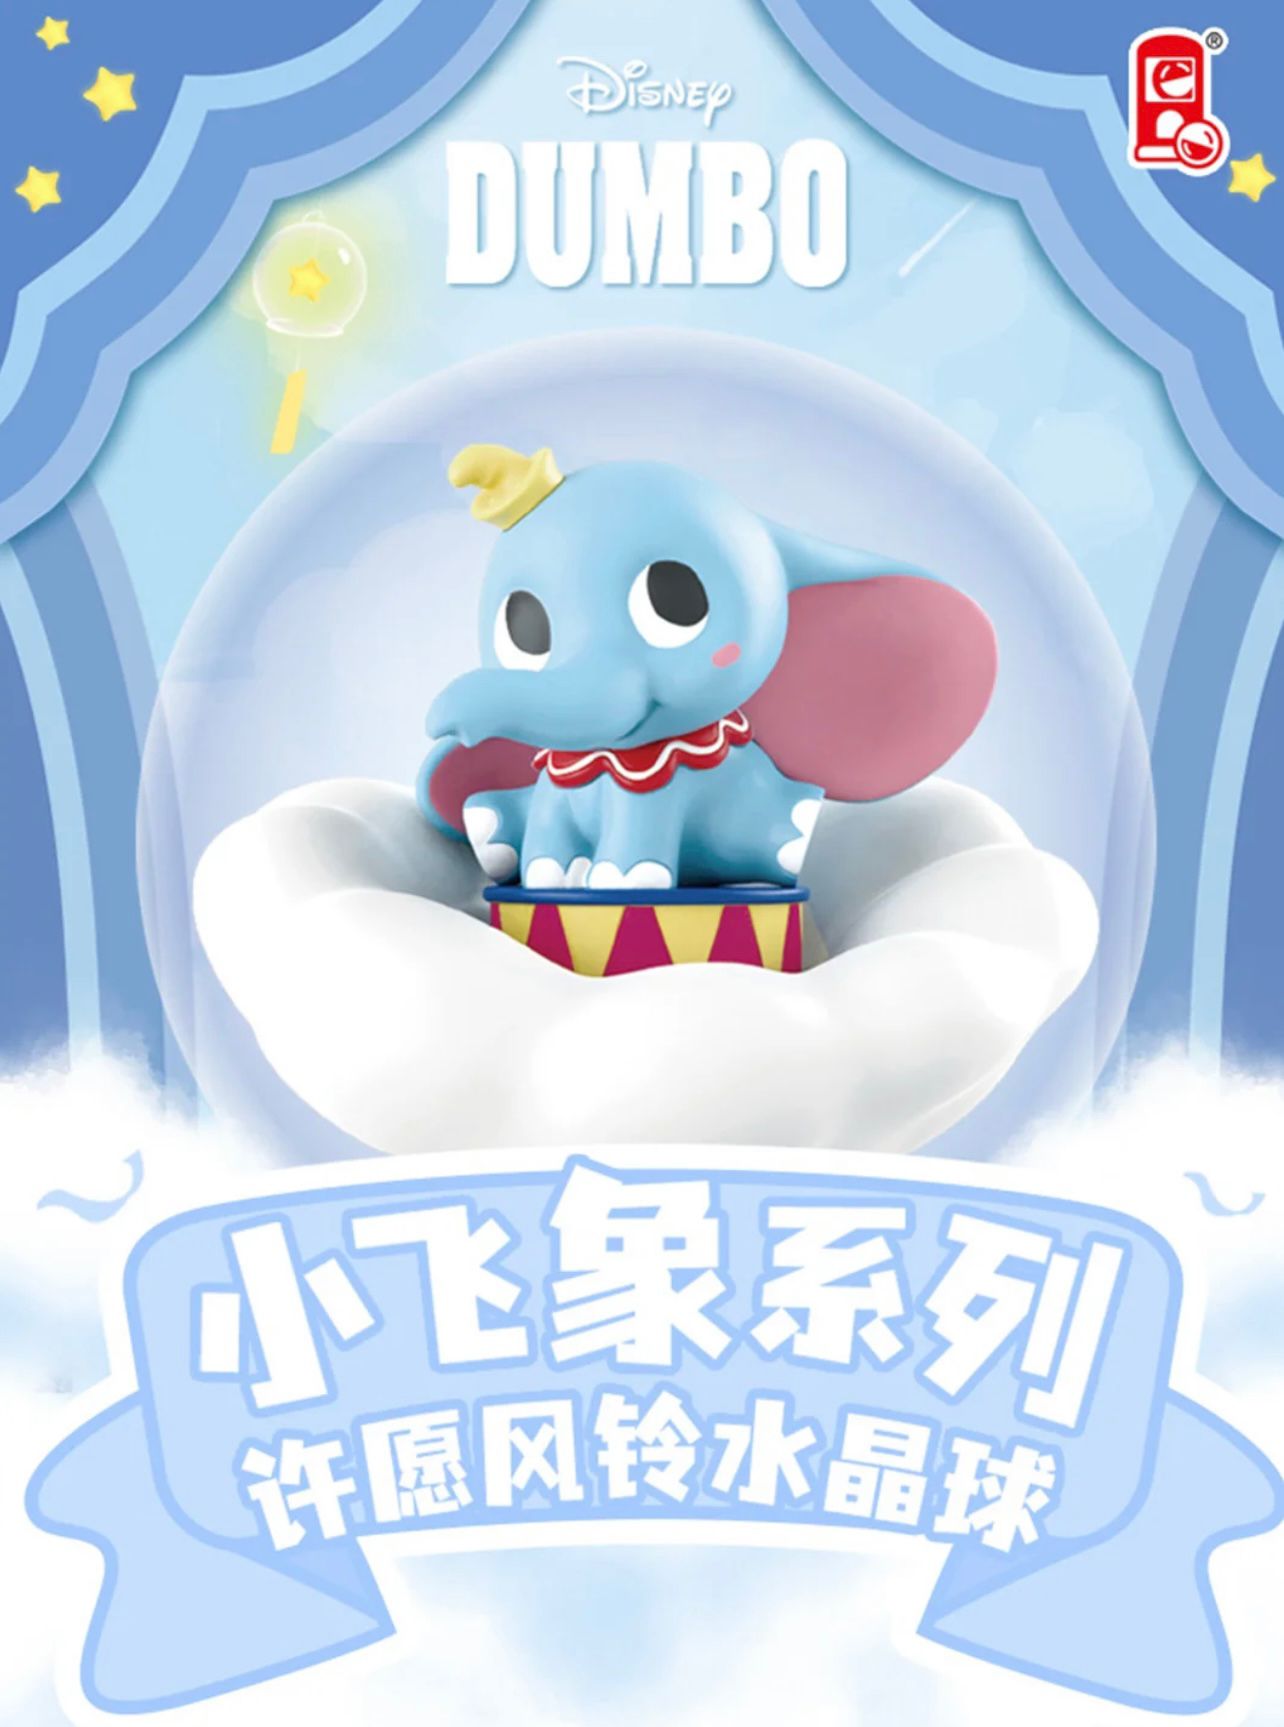 Dumbo Wishing Wind Chime Blind Box